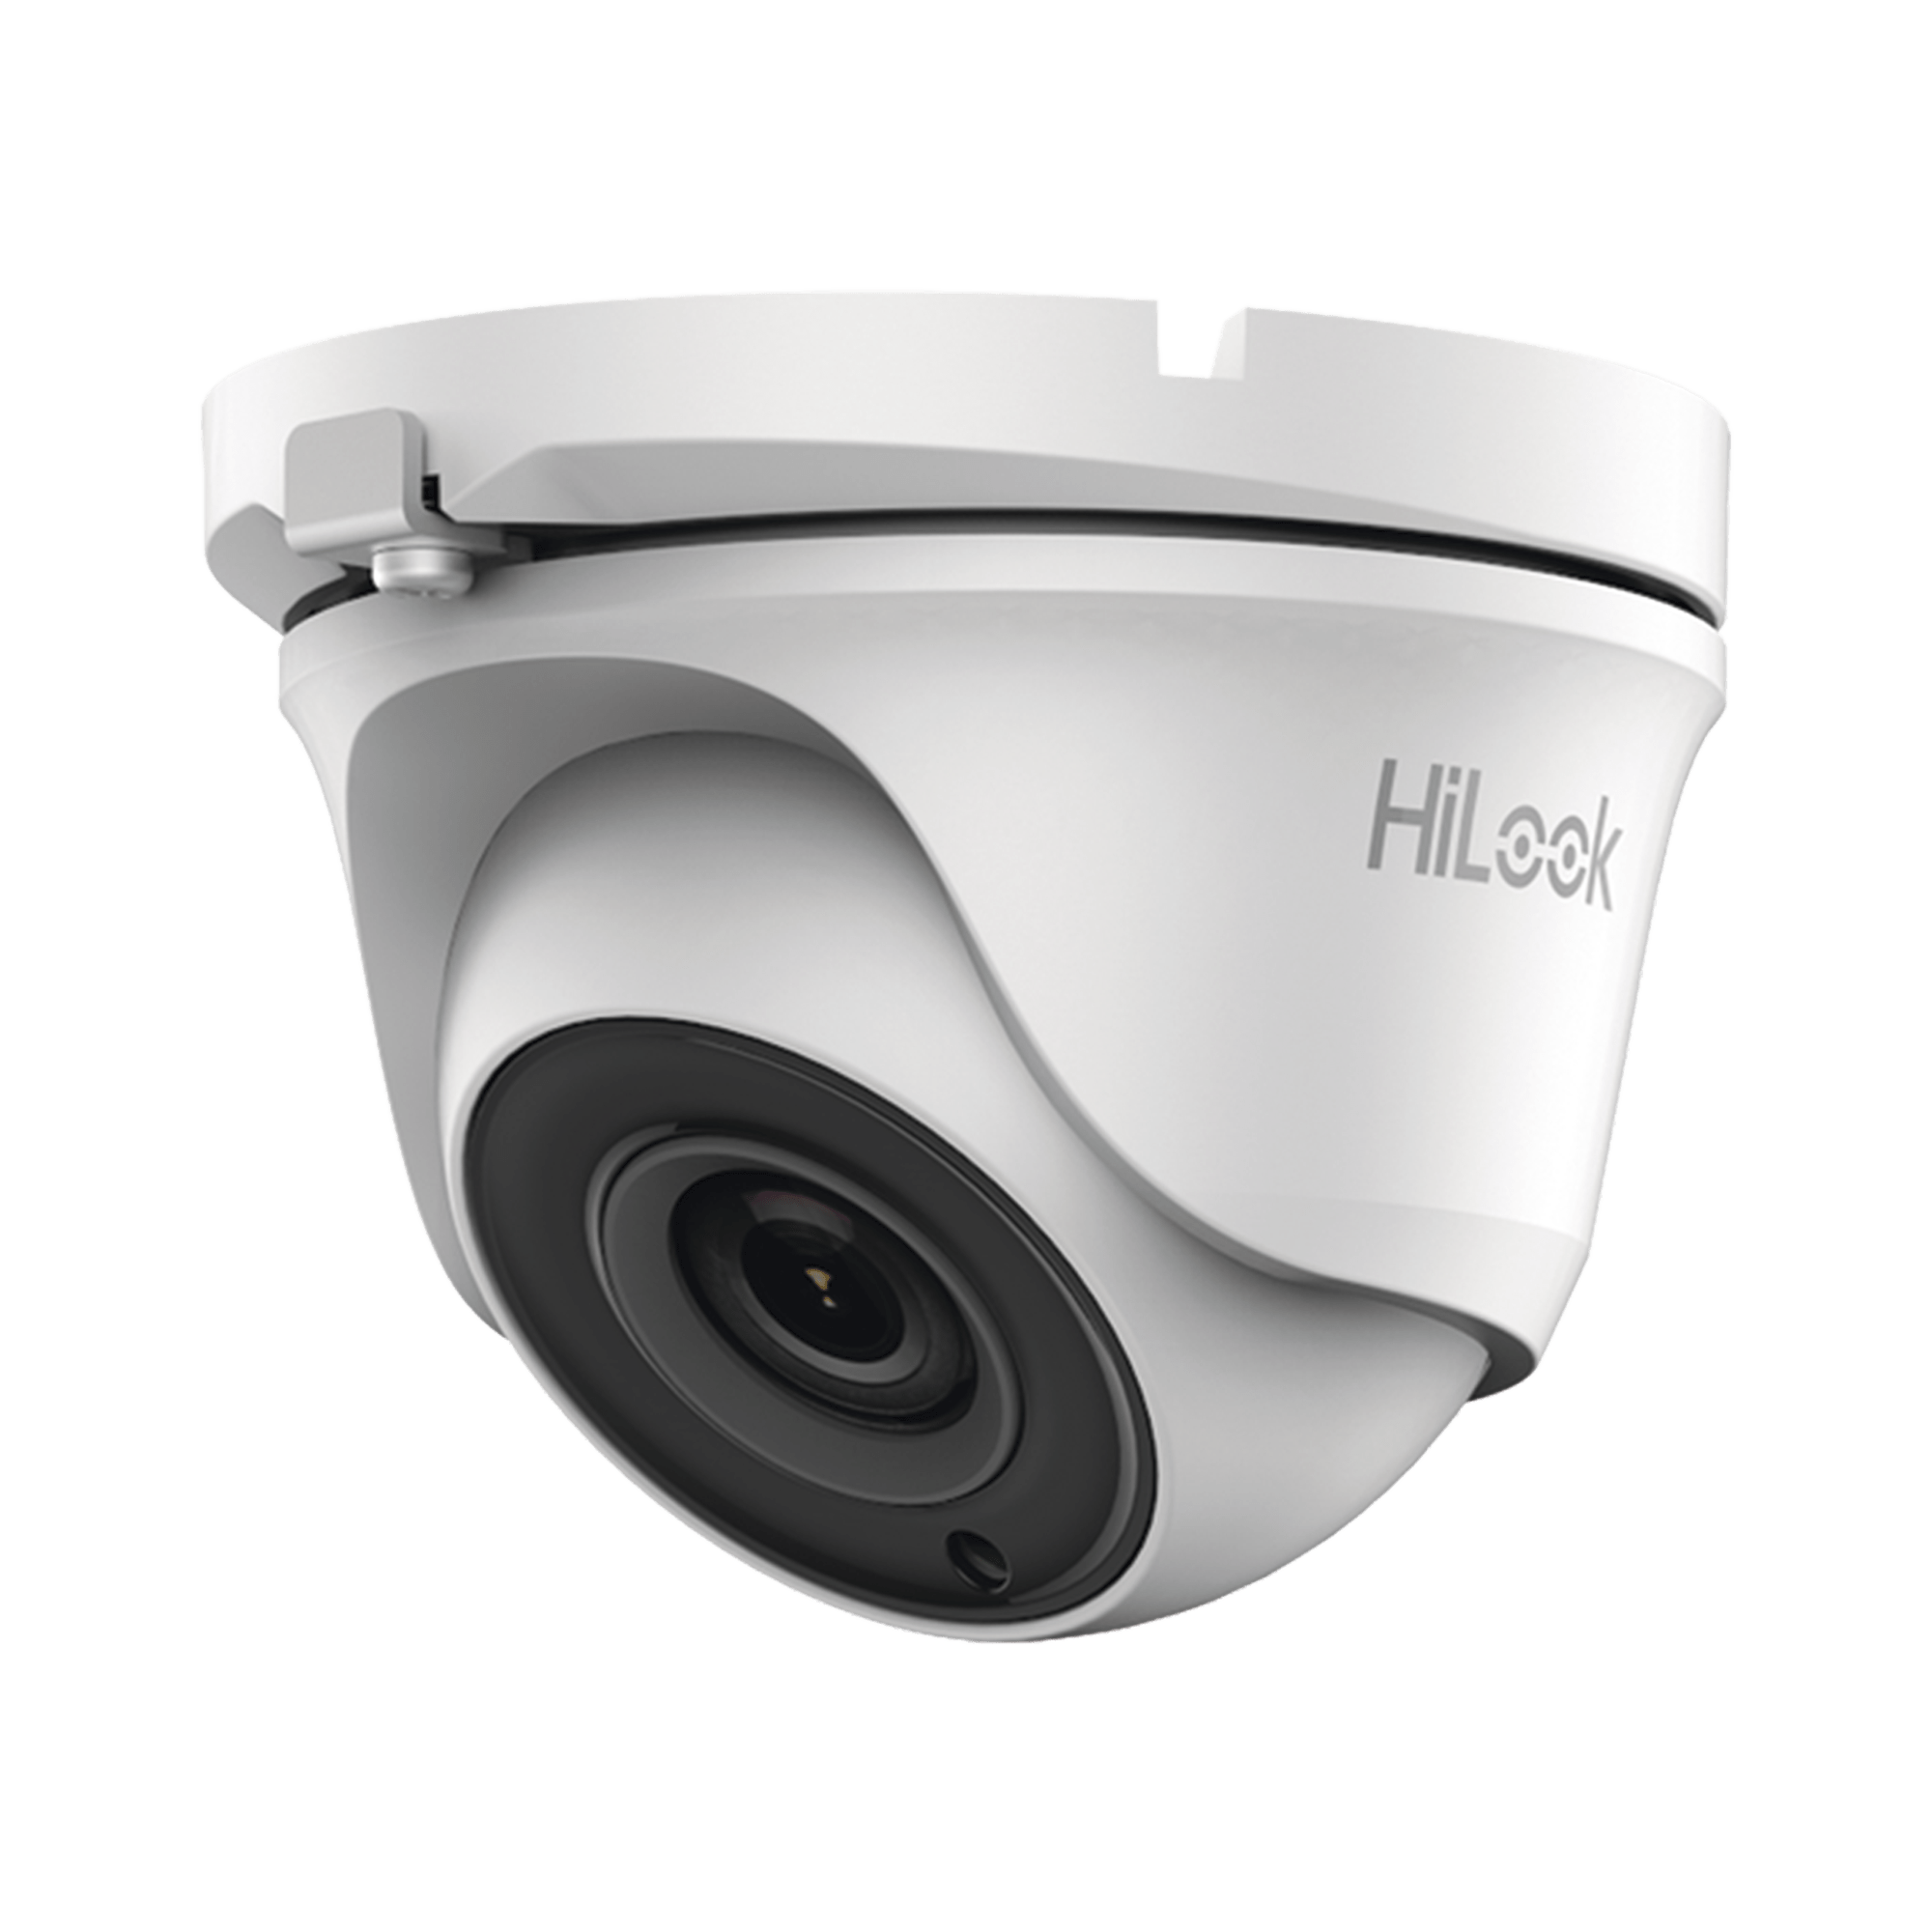 Cámara de vigilancia tipo domo HiLook de 1080p 2MP - - VHNGROUP: Integramos Seguridad y Tecnología.